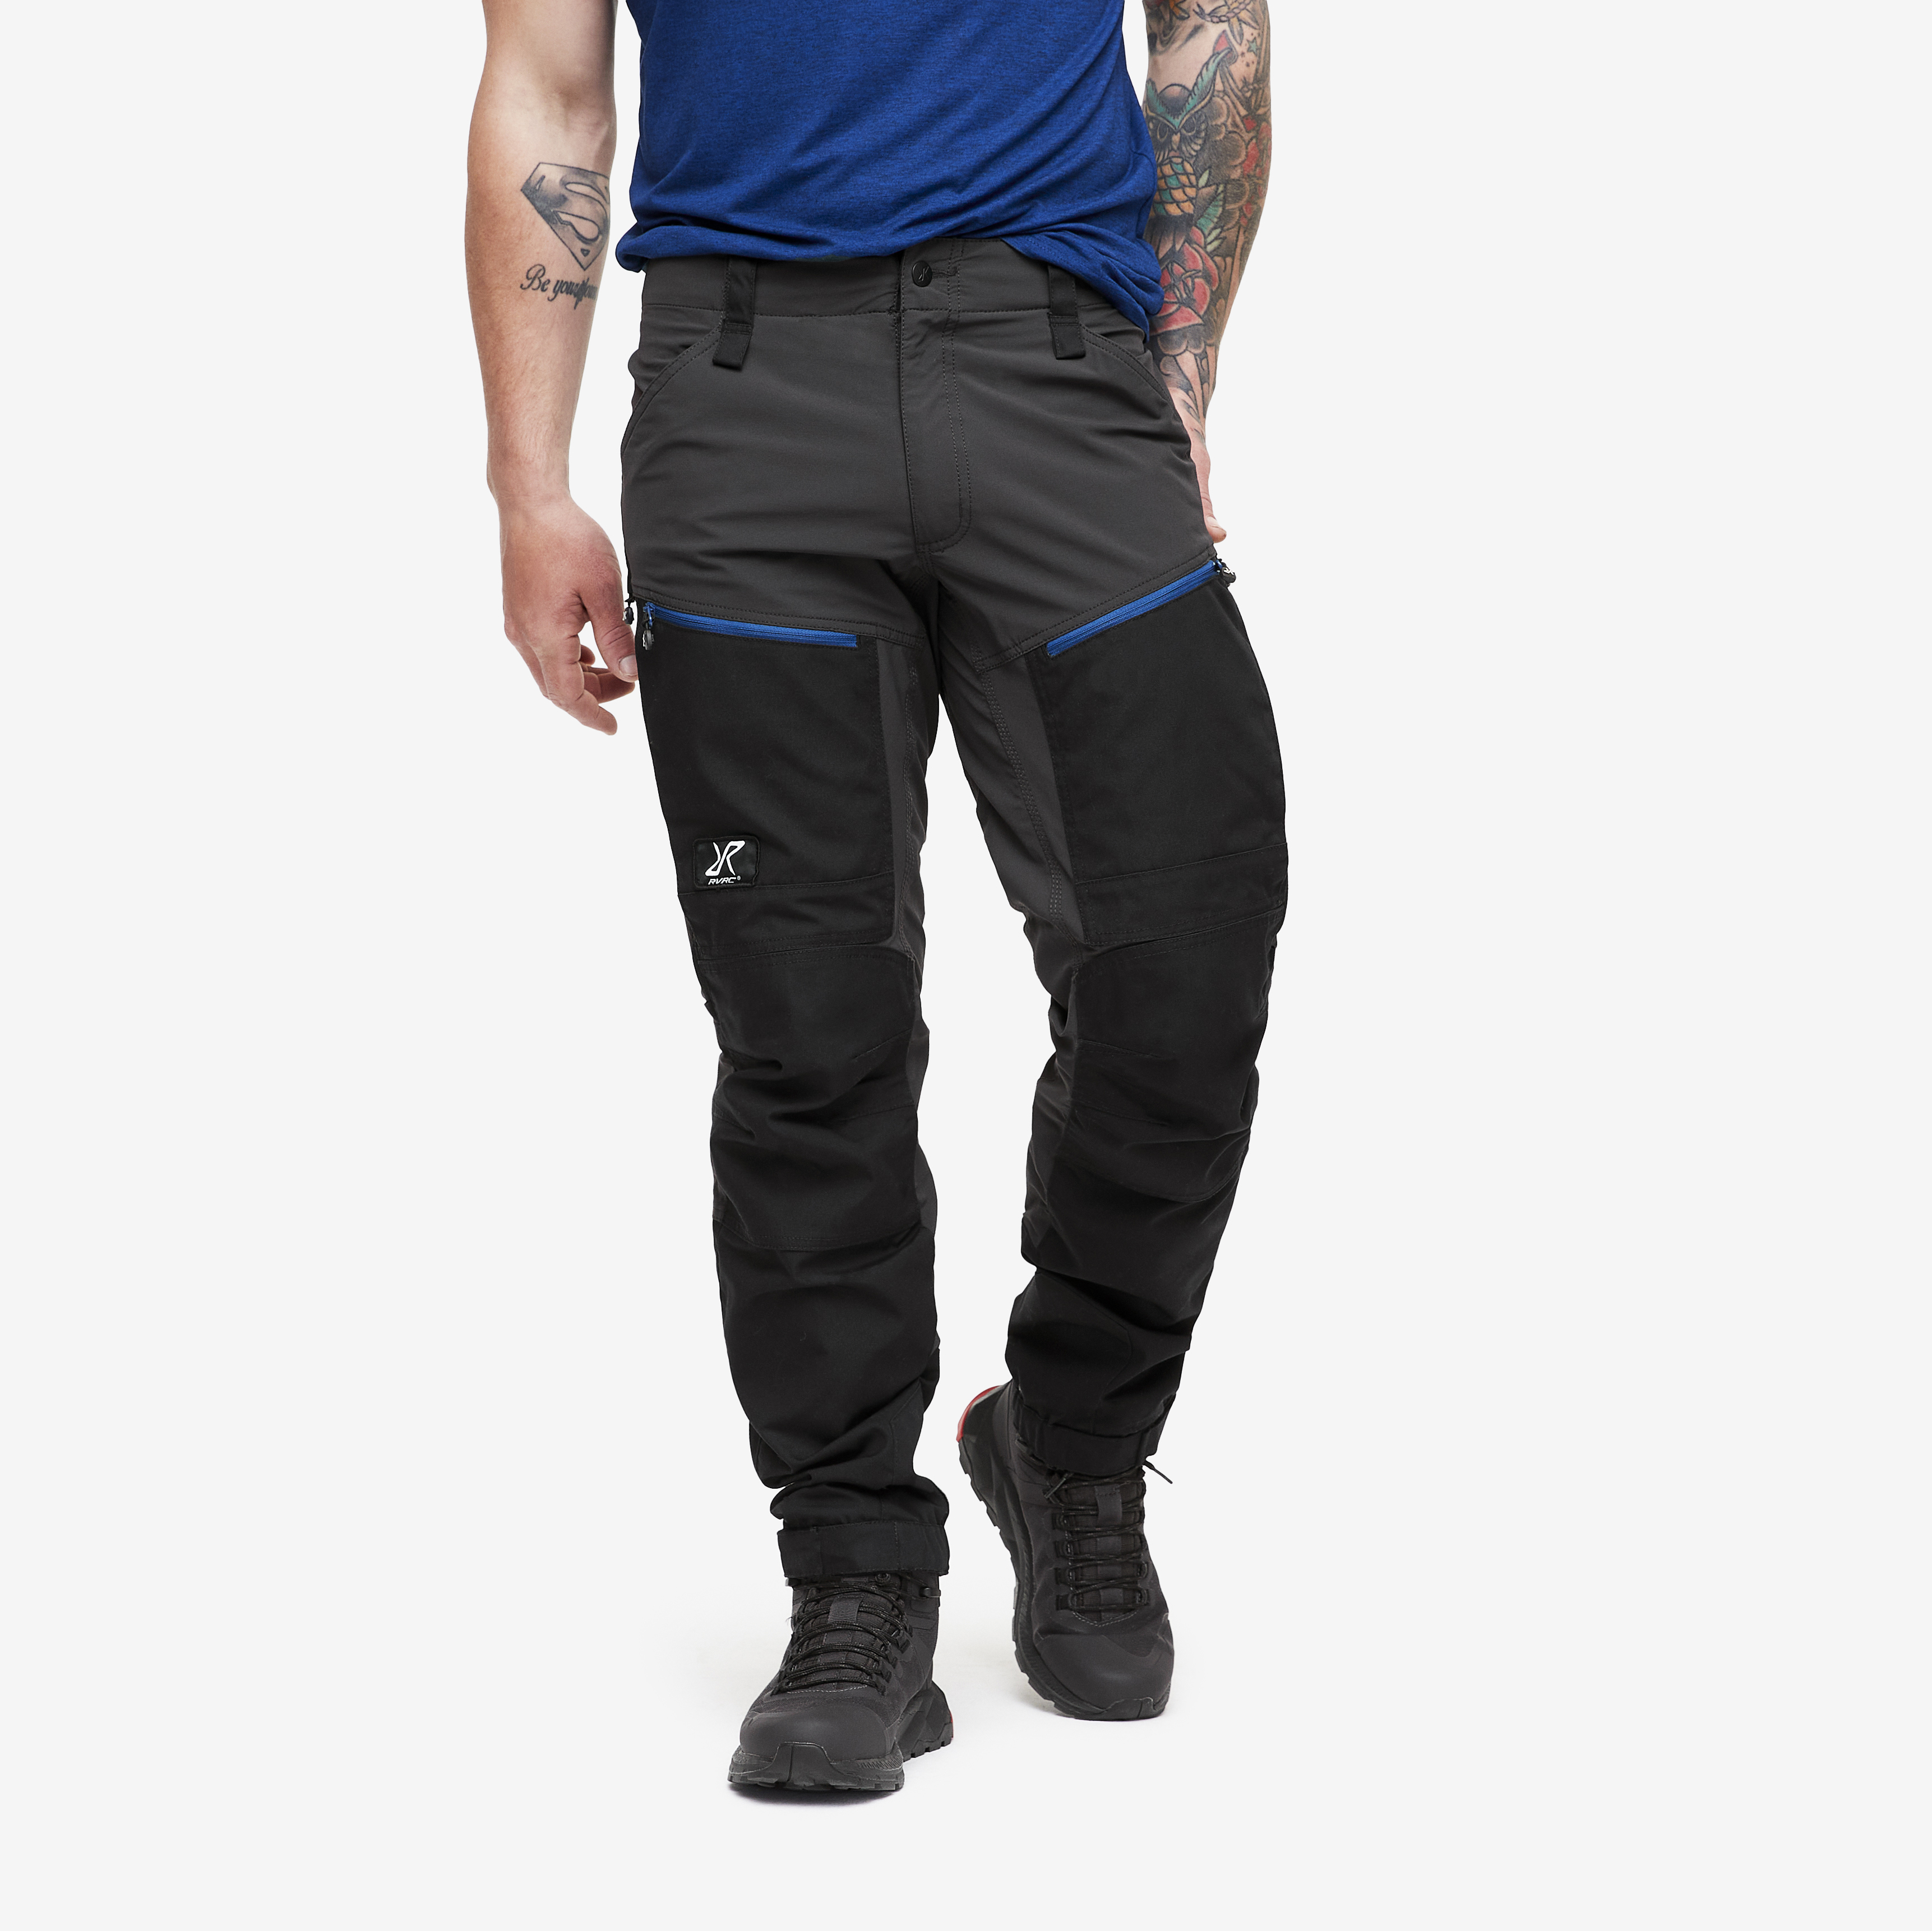 RVRC GP Pro Pants Anthracite/Dark Blue Herren